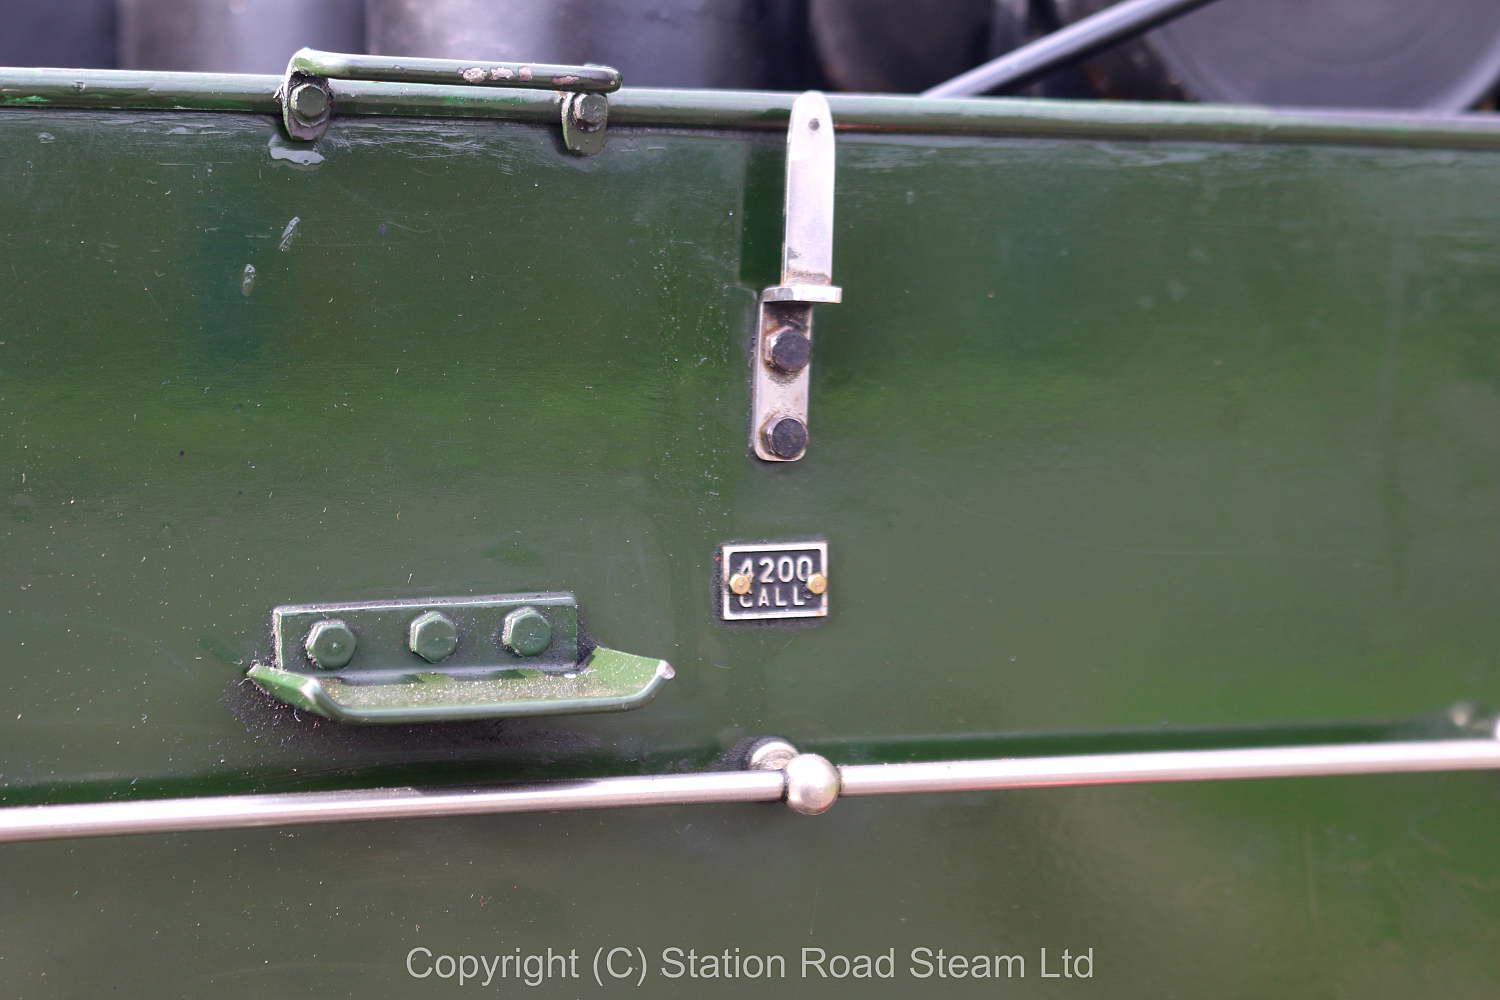 7 1/4 inch gauge LNER V2 2-6-2 "The Snapper"